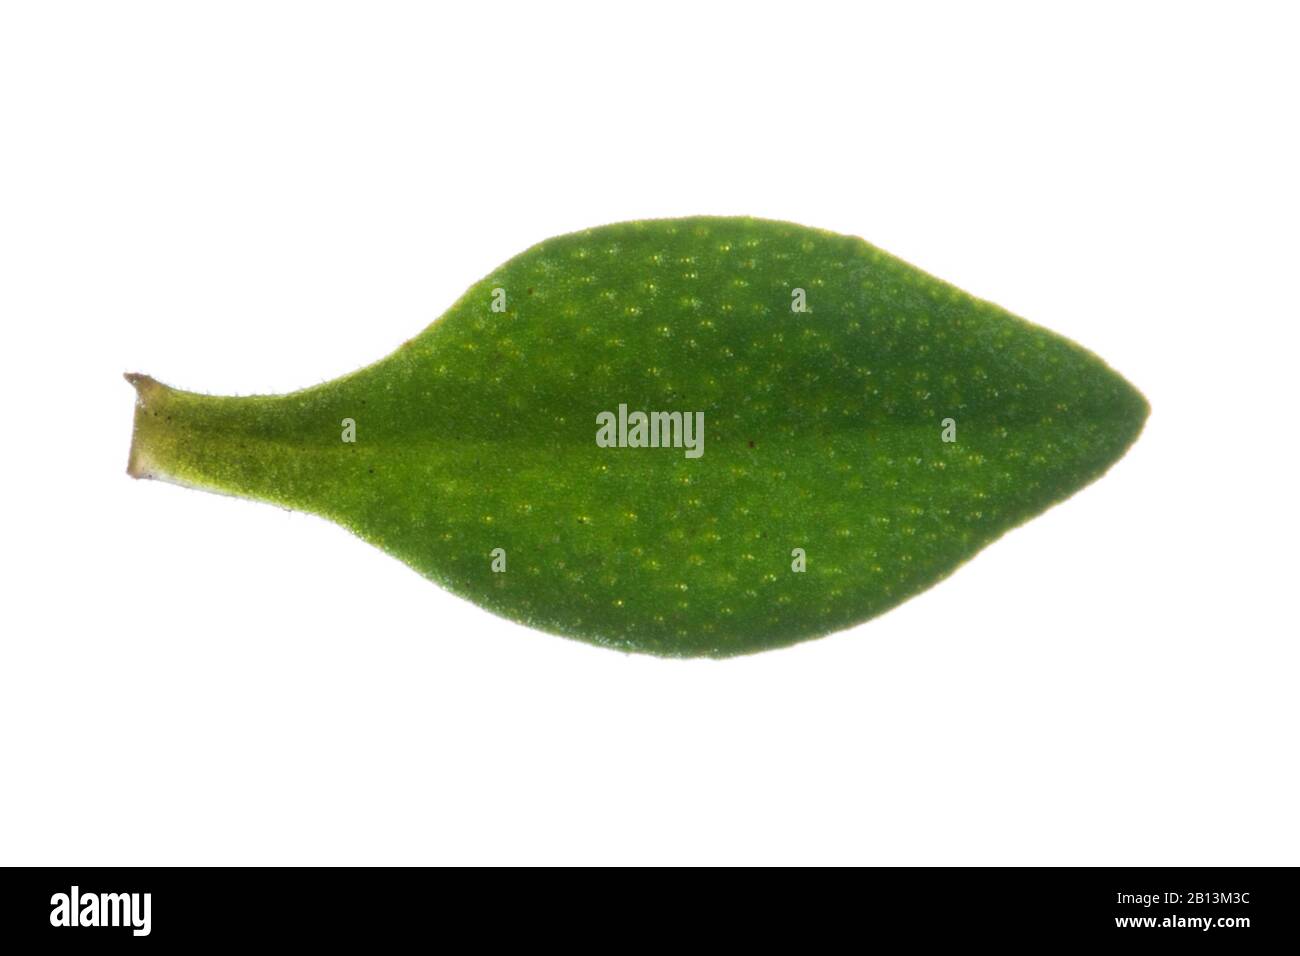 Thym de jardin, thym anglais, thym commun (Thymus vulgaris), feuille, découpe Banque D'Images